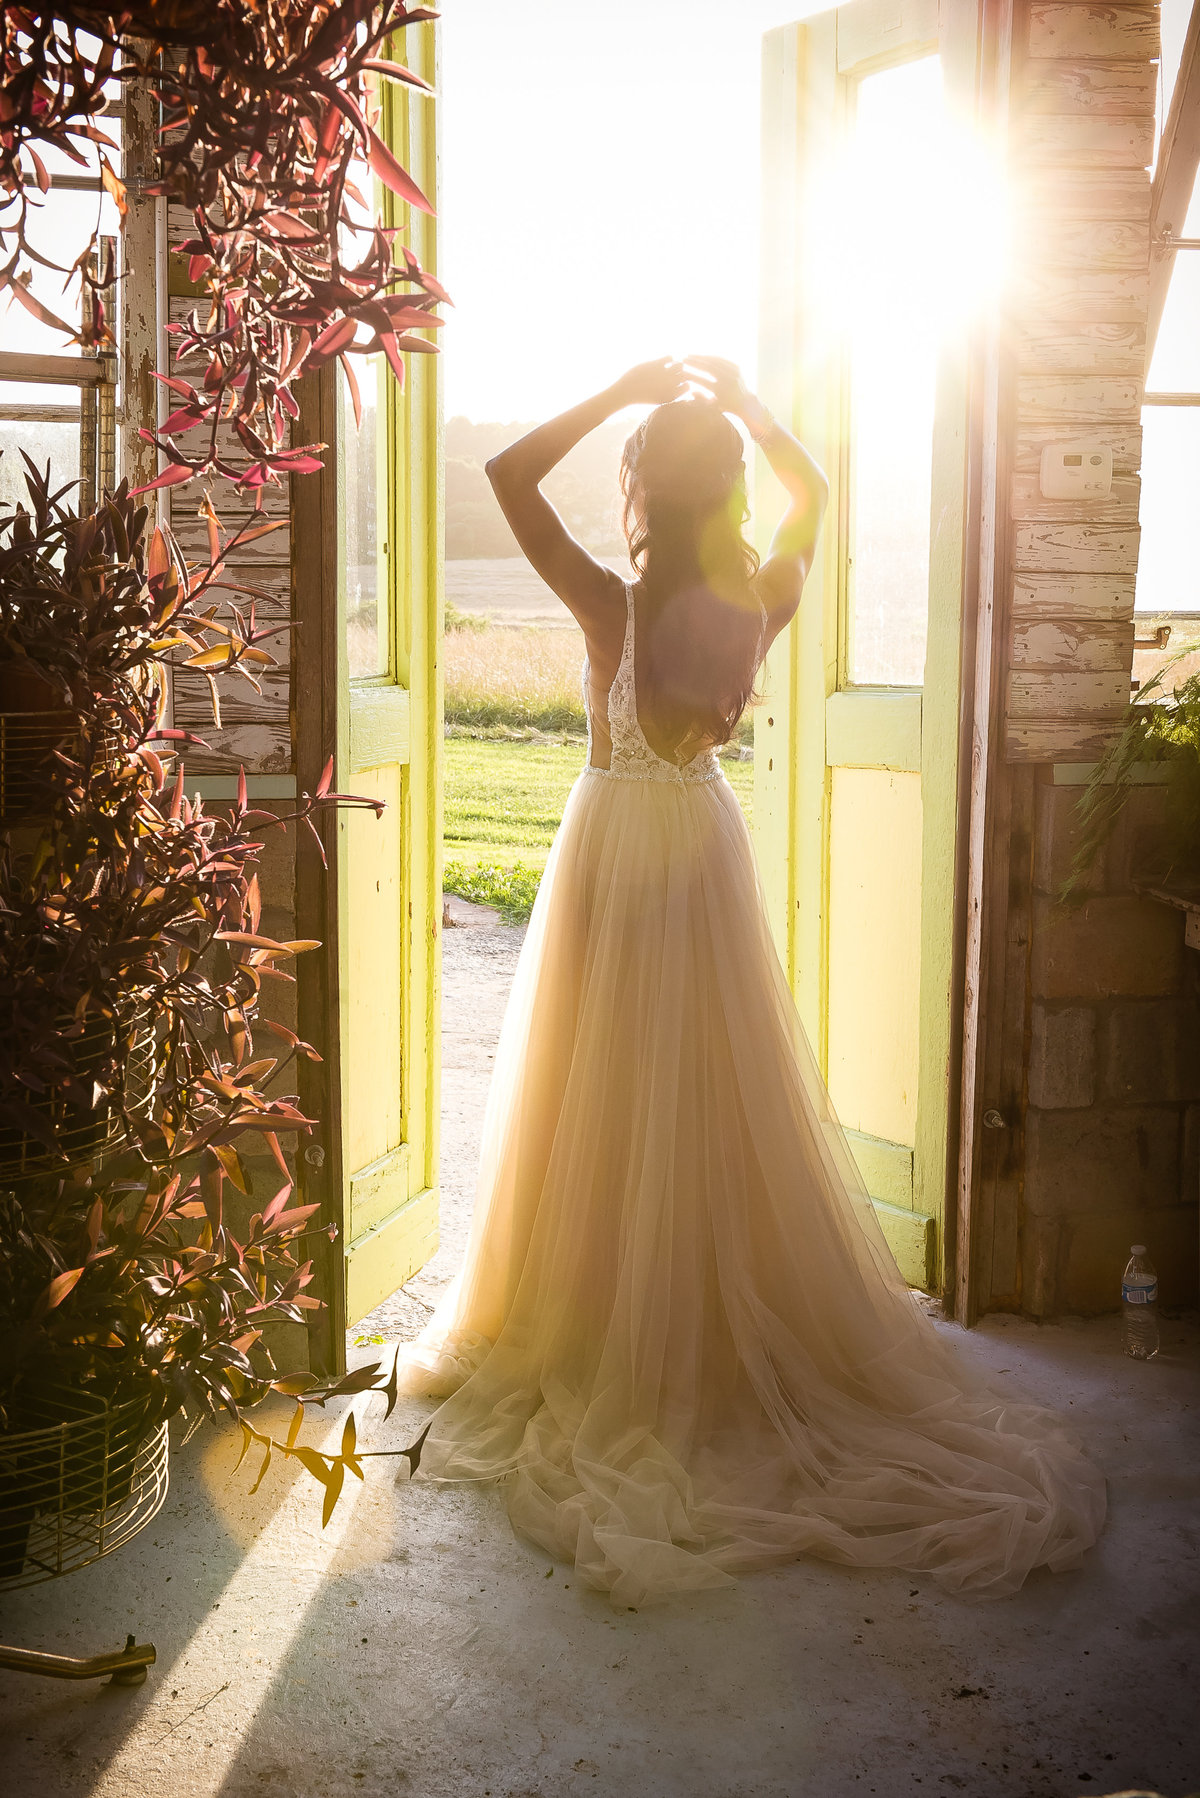 Bride in doorway at sunset